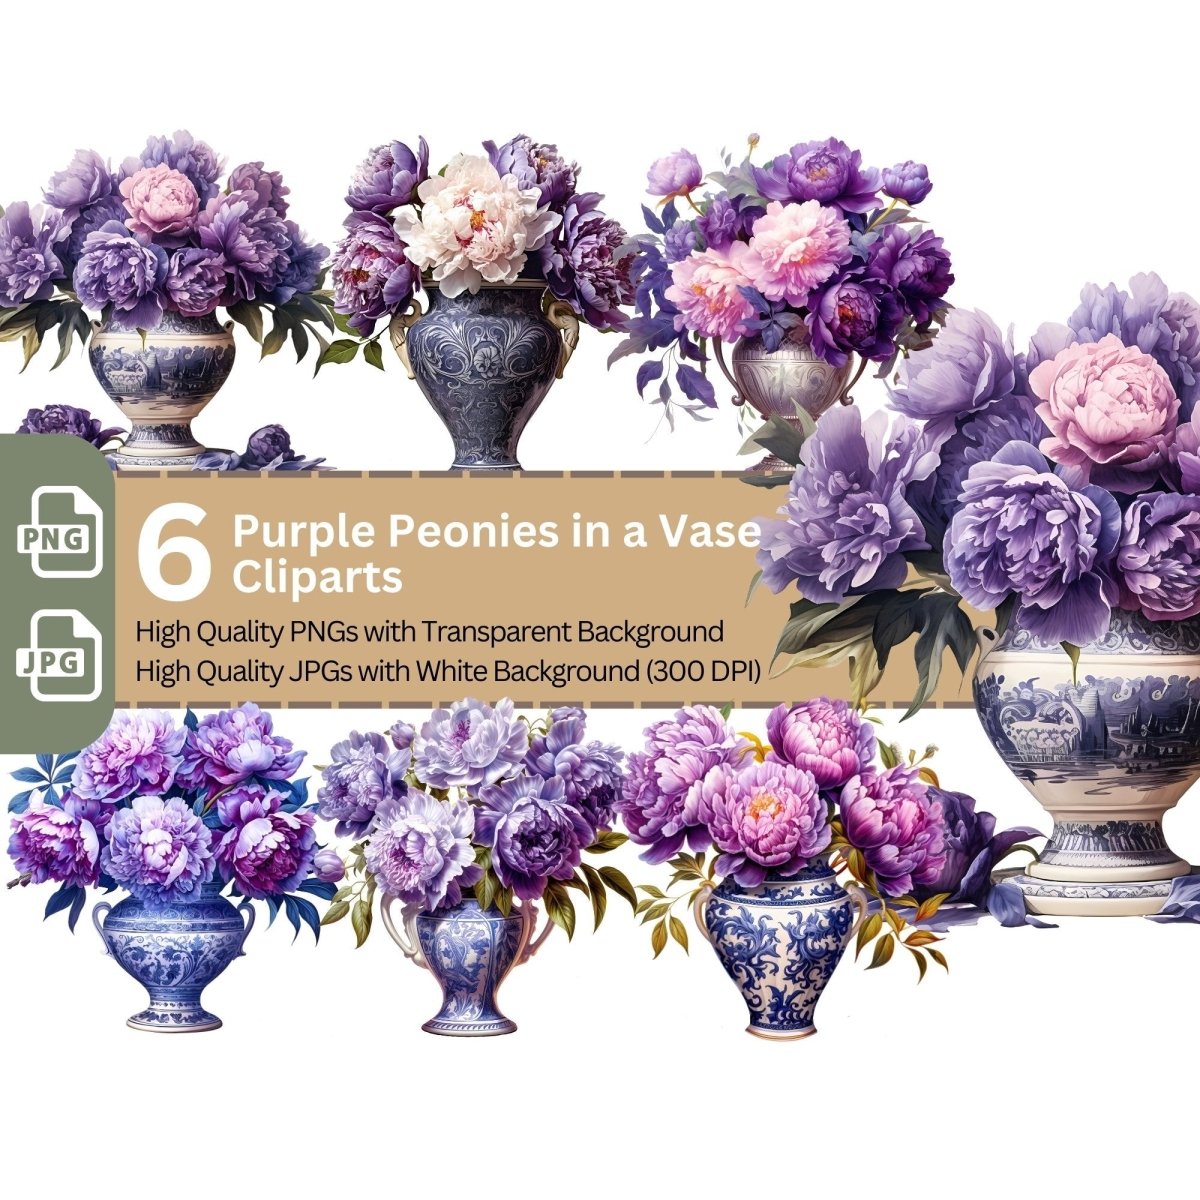 Purple Peonies in Vase 6+6 PNG Clip Art Bundle Floral Artwork - Everything Pixel